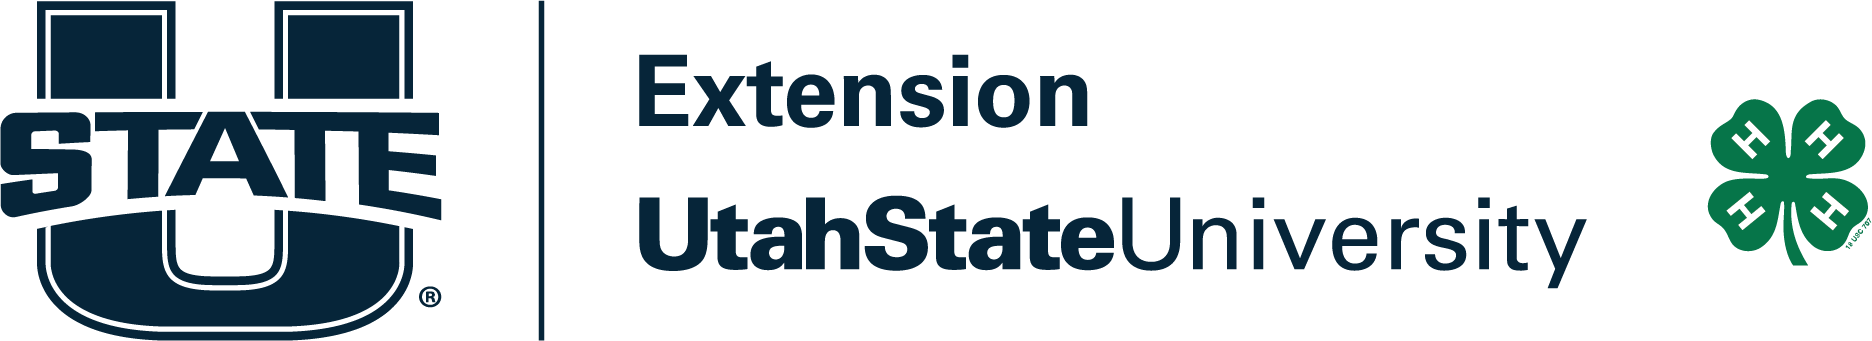 Extension Utah State University Logo